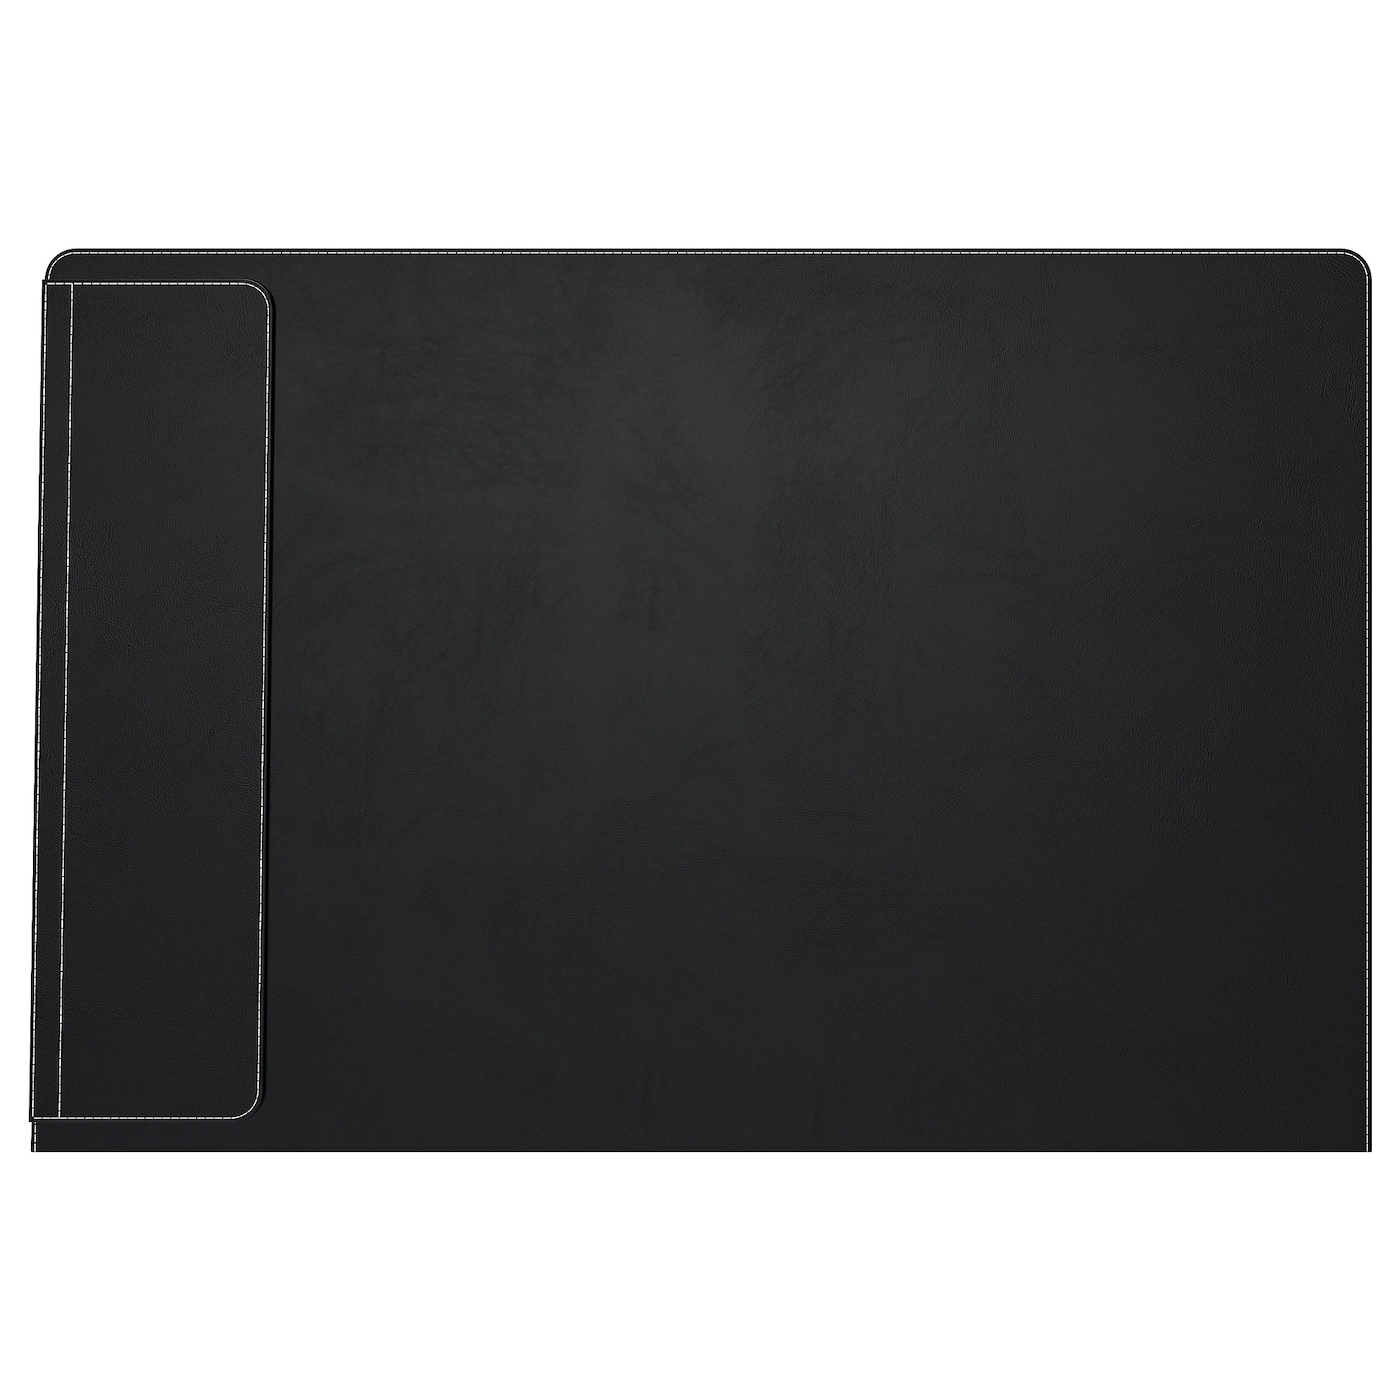 Коврик для стола - RISSLA IKEA/ РИССЛА ИКЕА,  86x58 см, черный